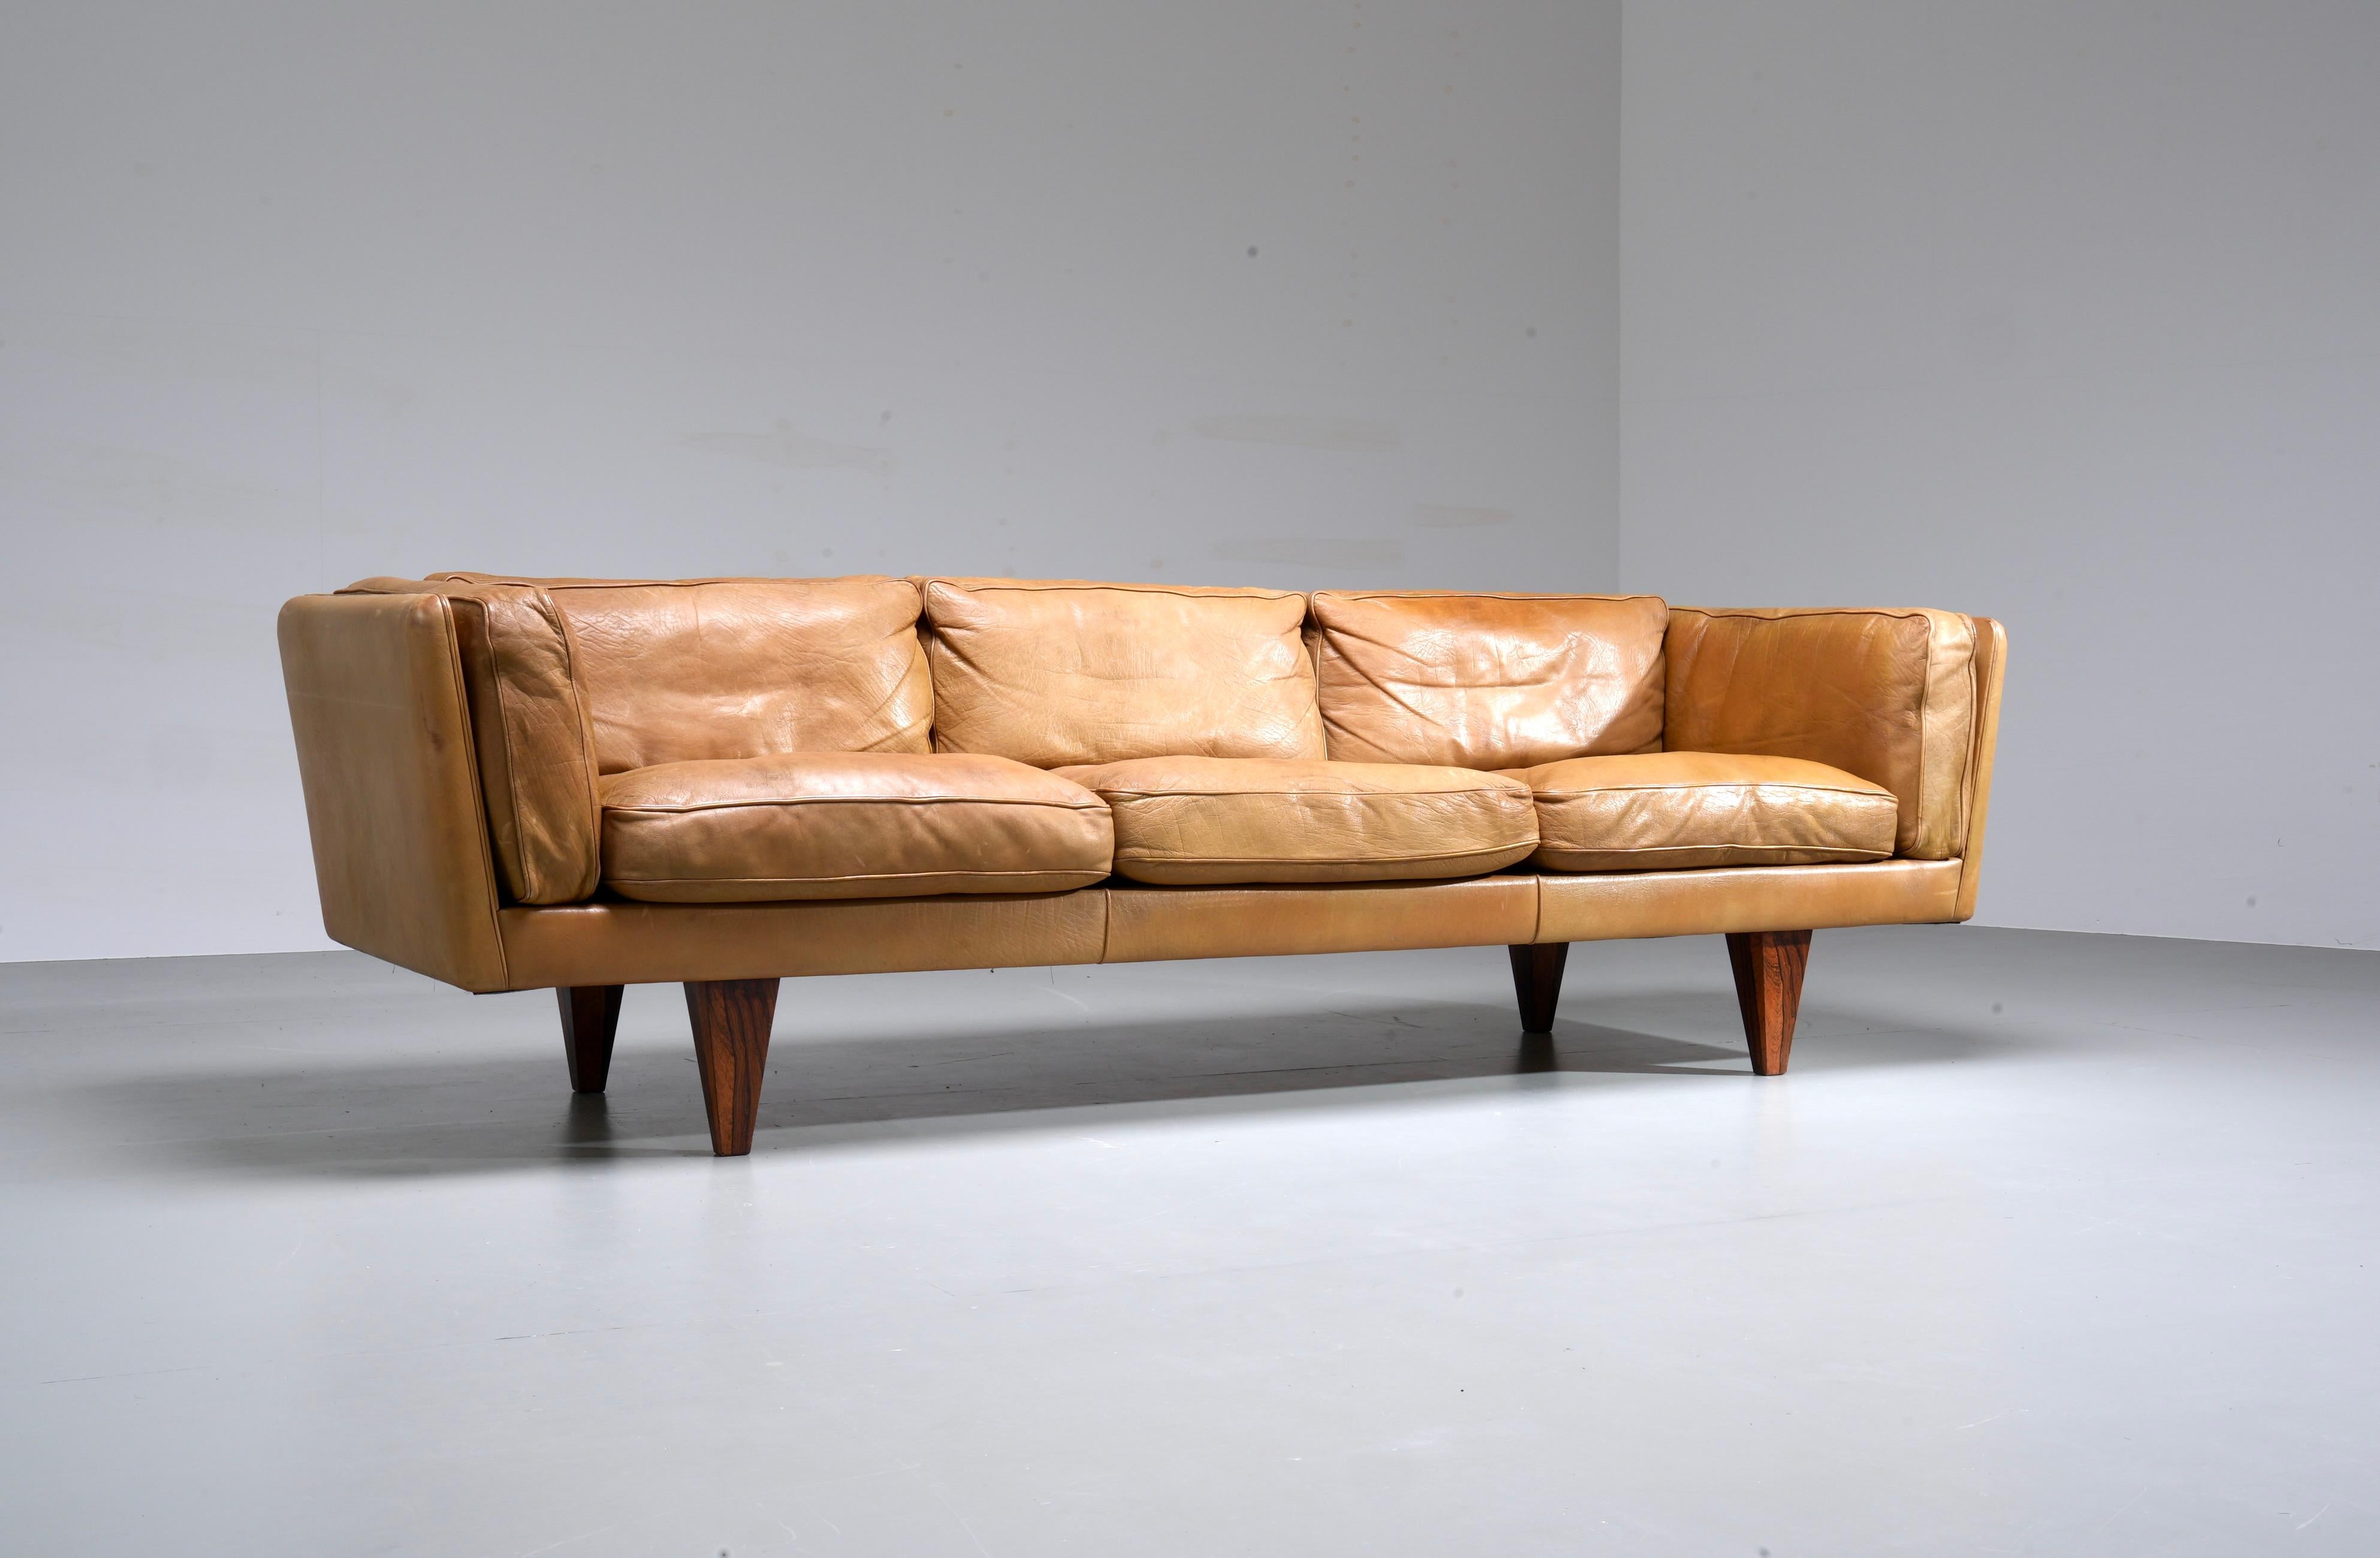 Illum Wikkelsø Dreisitziges Sofa 'V11' aus cognacfarbenem Leder und Pyramidenfüßen aus Holz.

Perfekte Proportionen machen das Sofa V11 von Illum Wikkelsø so besonders. Das Leder ist durchgängig, auch an der Rückseite, und macht dieses Sofa zu einem